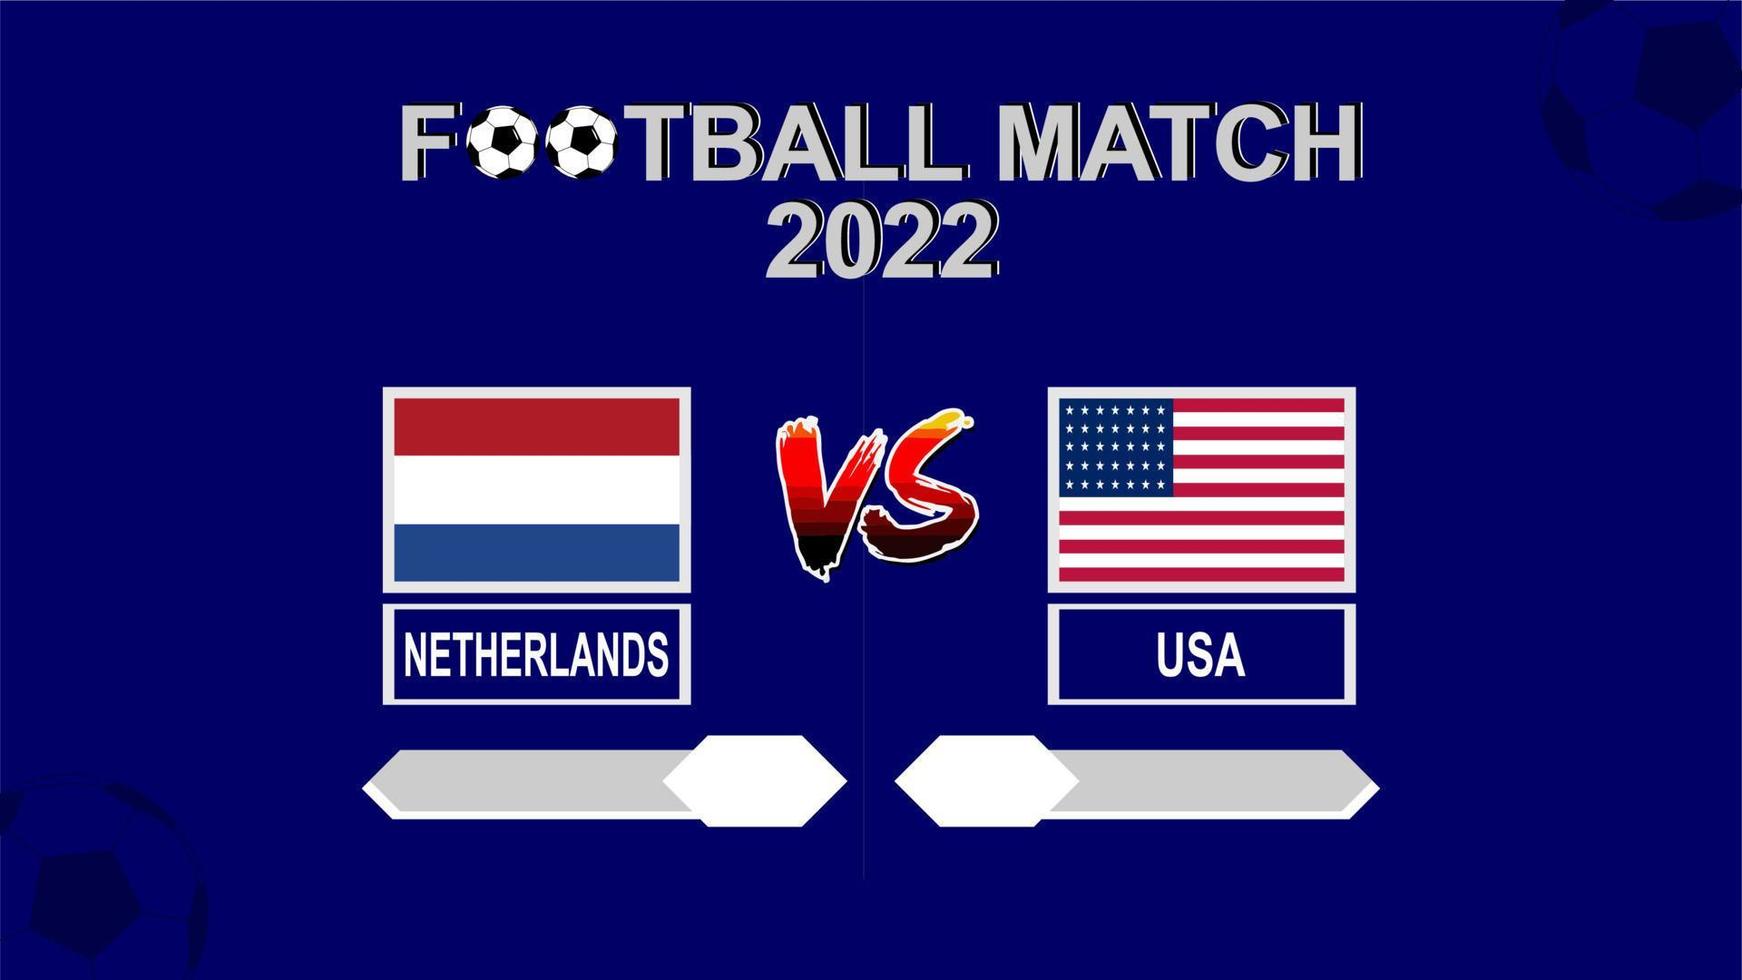 pays bas vs usa football cup 2022 modèle bleu vecteur de fond pour le calendrier ou le match de résultat